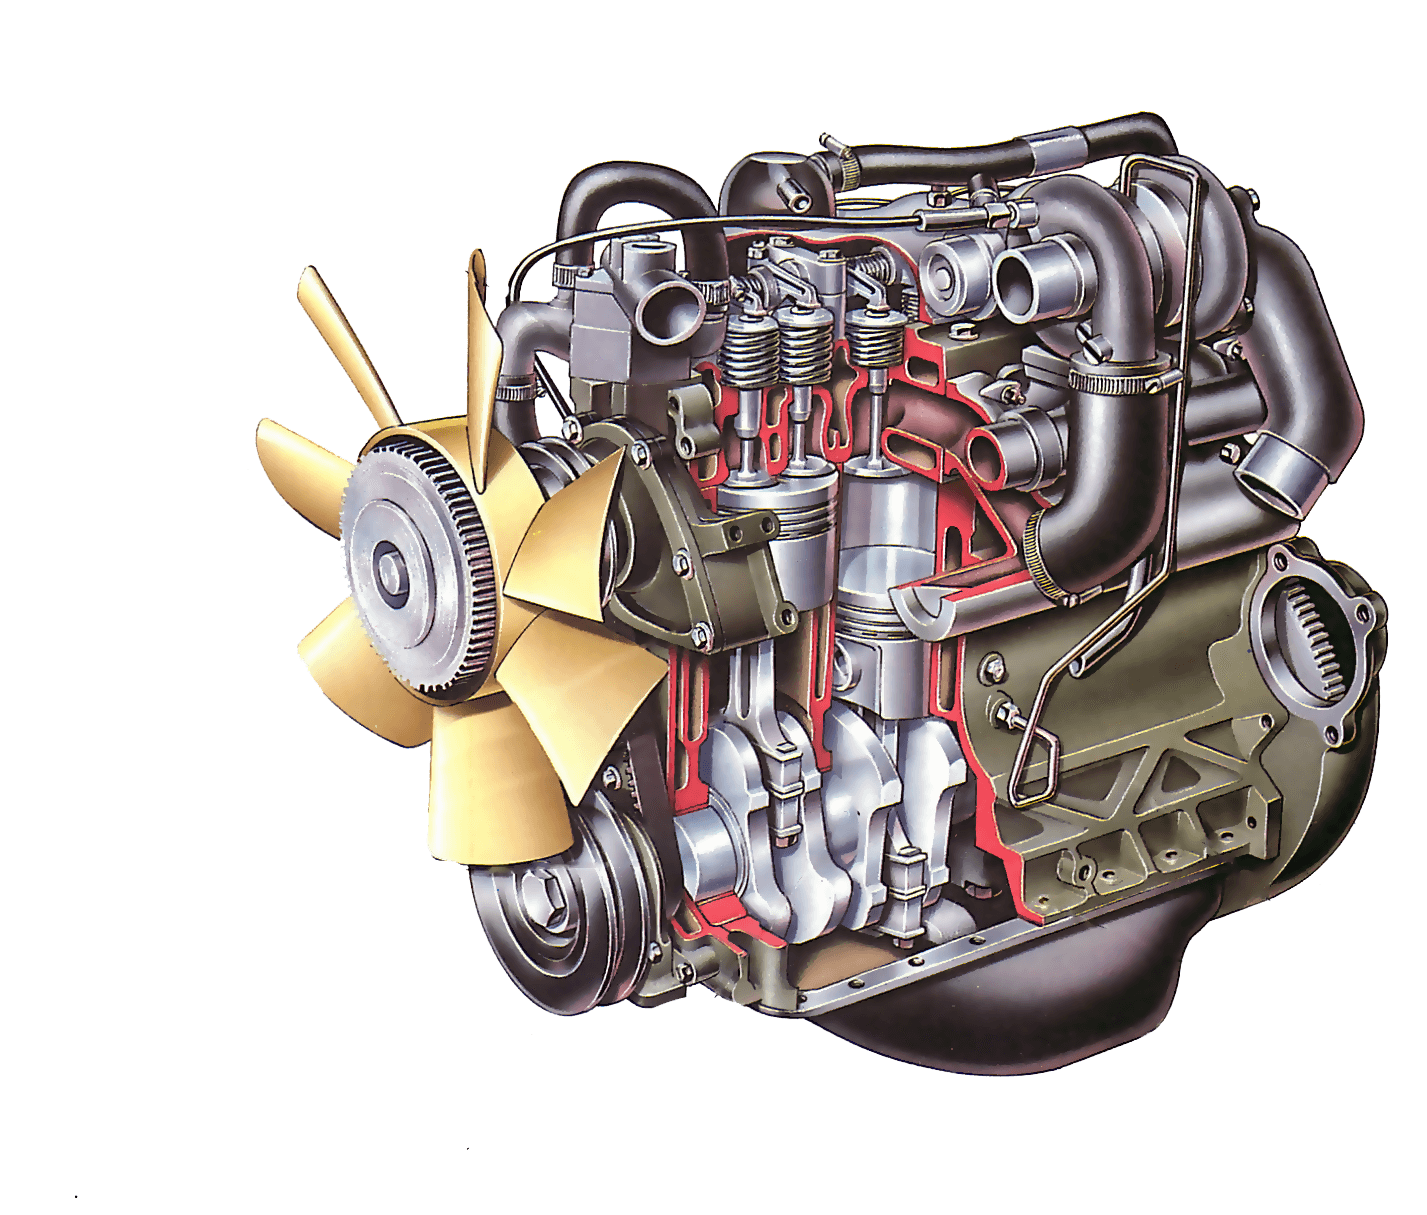 Двигатель на автомобиле является. Устройство дизельного ДВС. Дизельный двигатель внутреннего сгорания. Двигатели внутреннего сгорания дизельный двигатель. Дизельный двигатель внутреннего сгорания автомобиля.